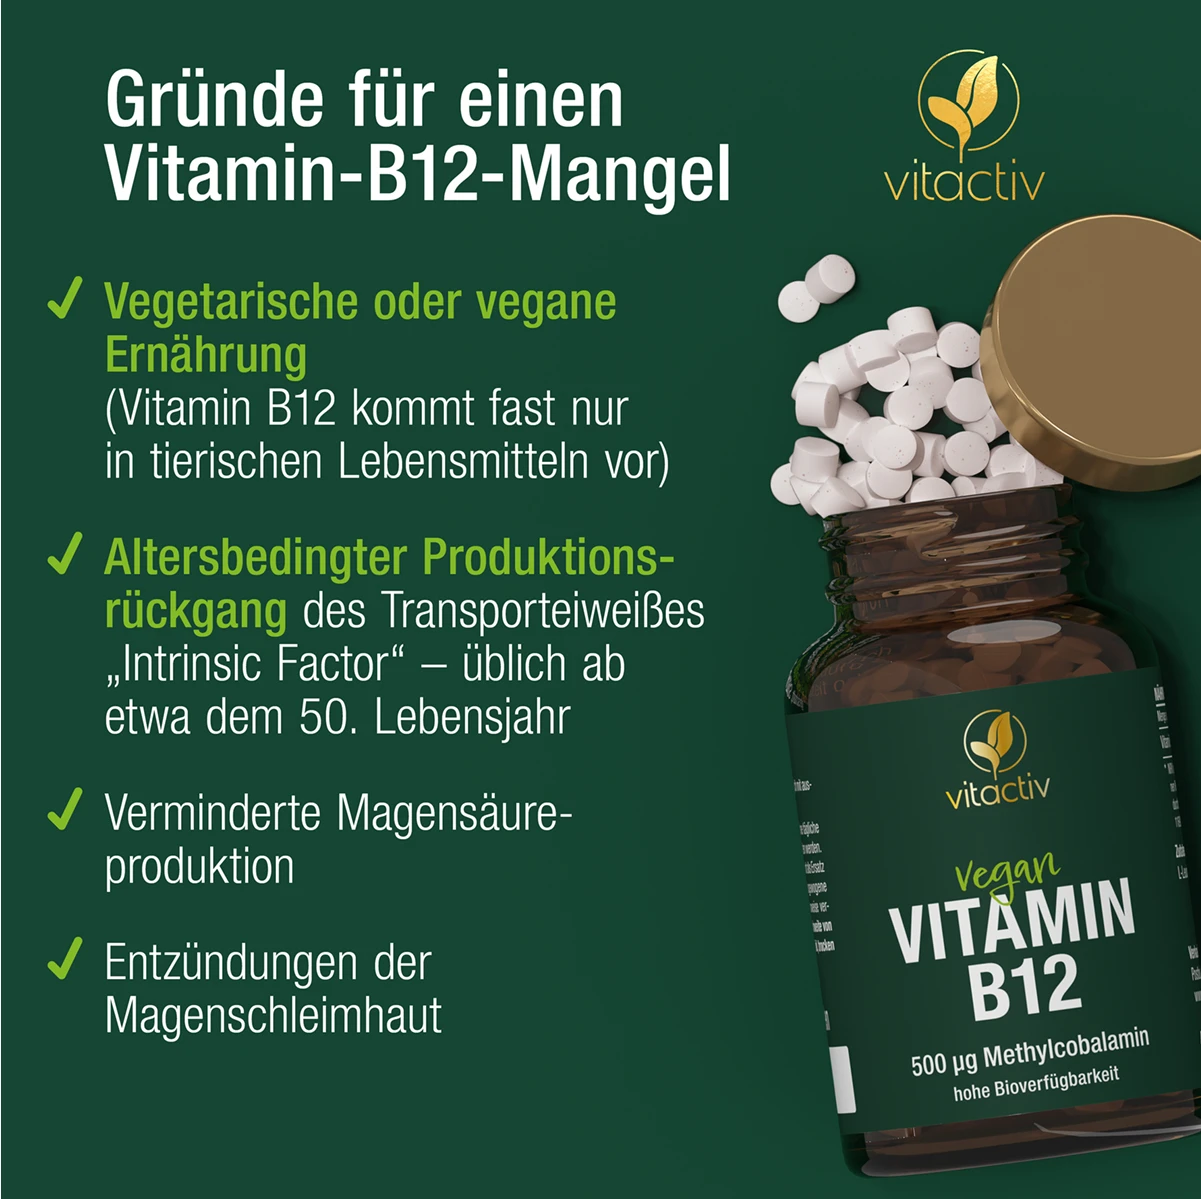 a830-vitamin-b12-19158643-03-1200px_1920x1920